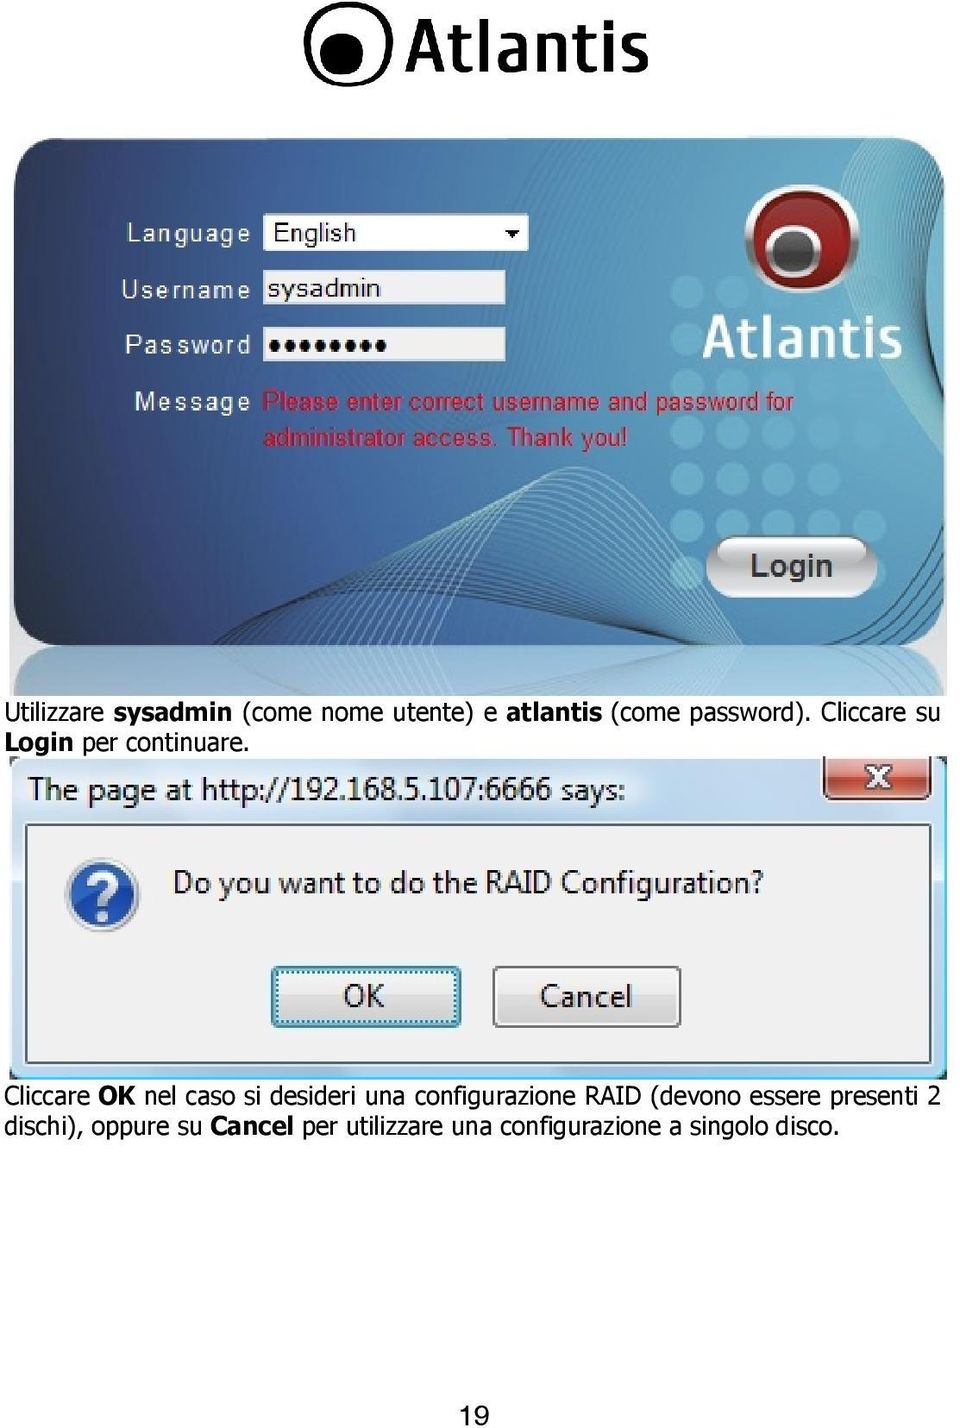 Cliccare OK nel caso si desideri una configurazione RAID (devono